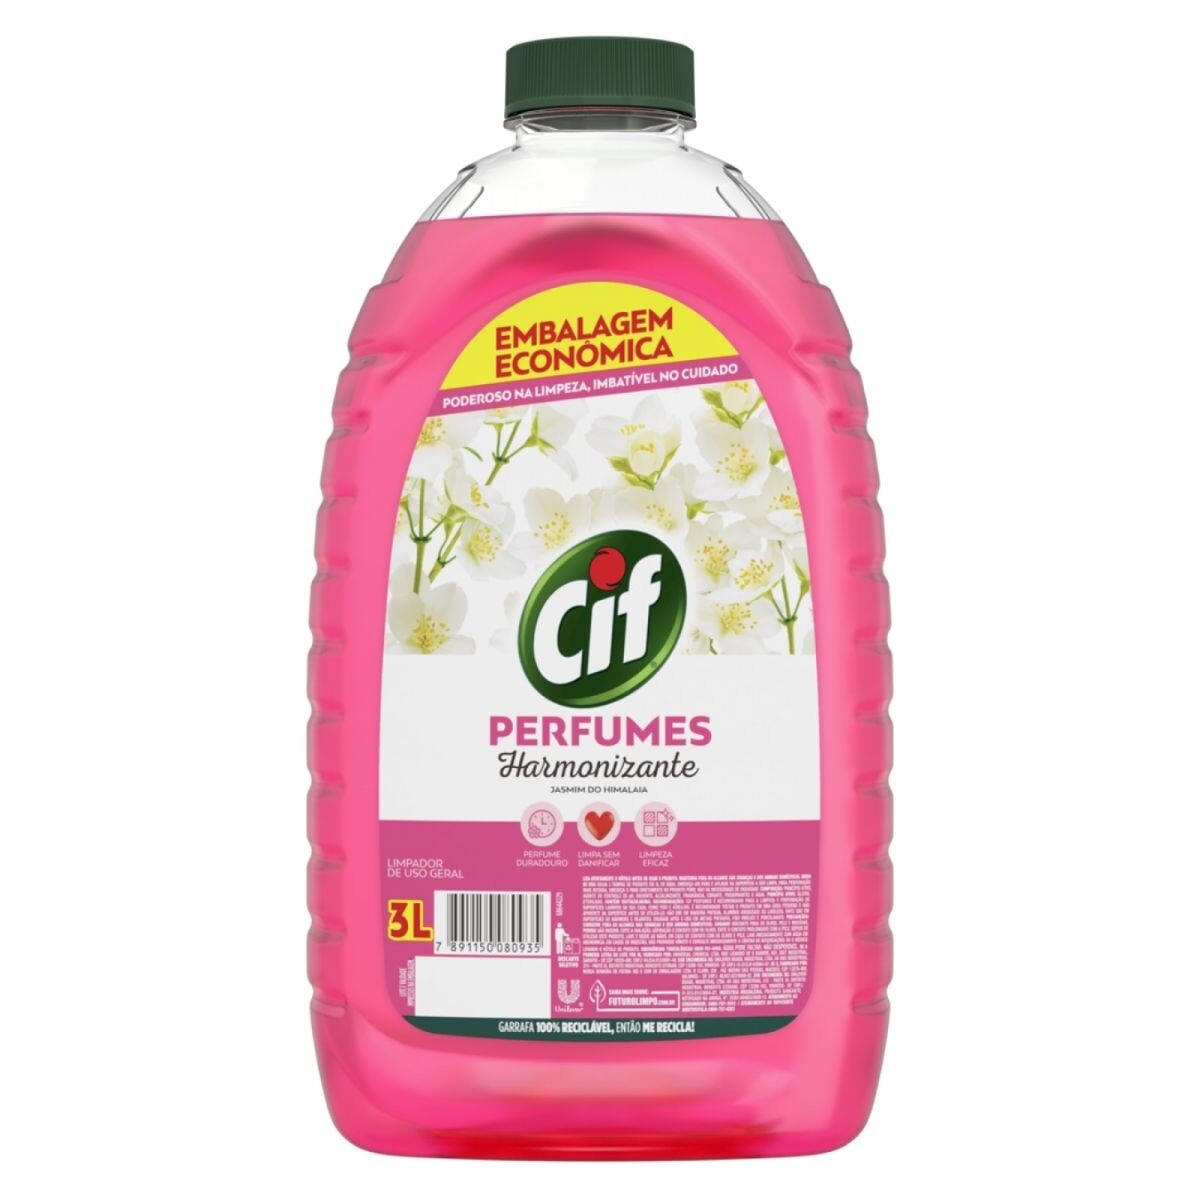 Limpiador Líquido CIF para Pisos Perfume Armonizante - 3 LT 